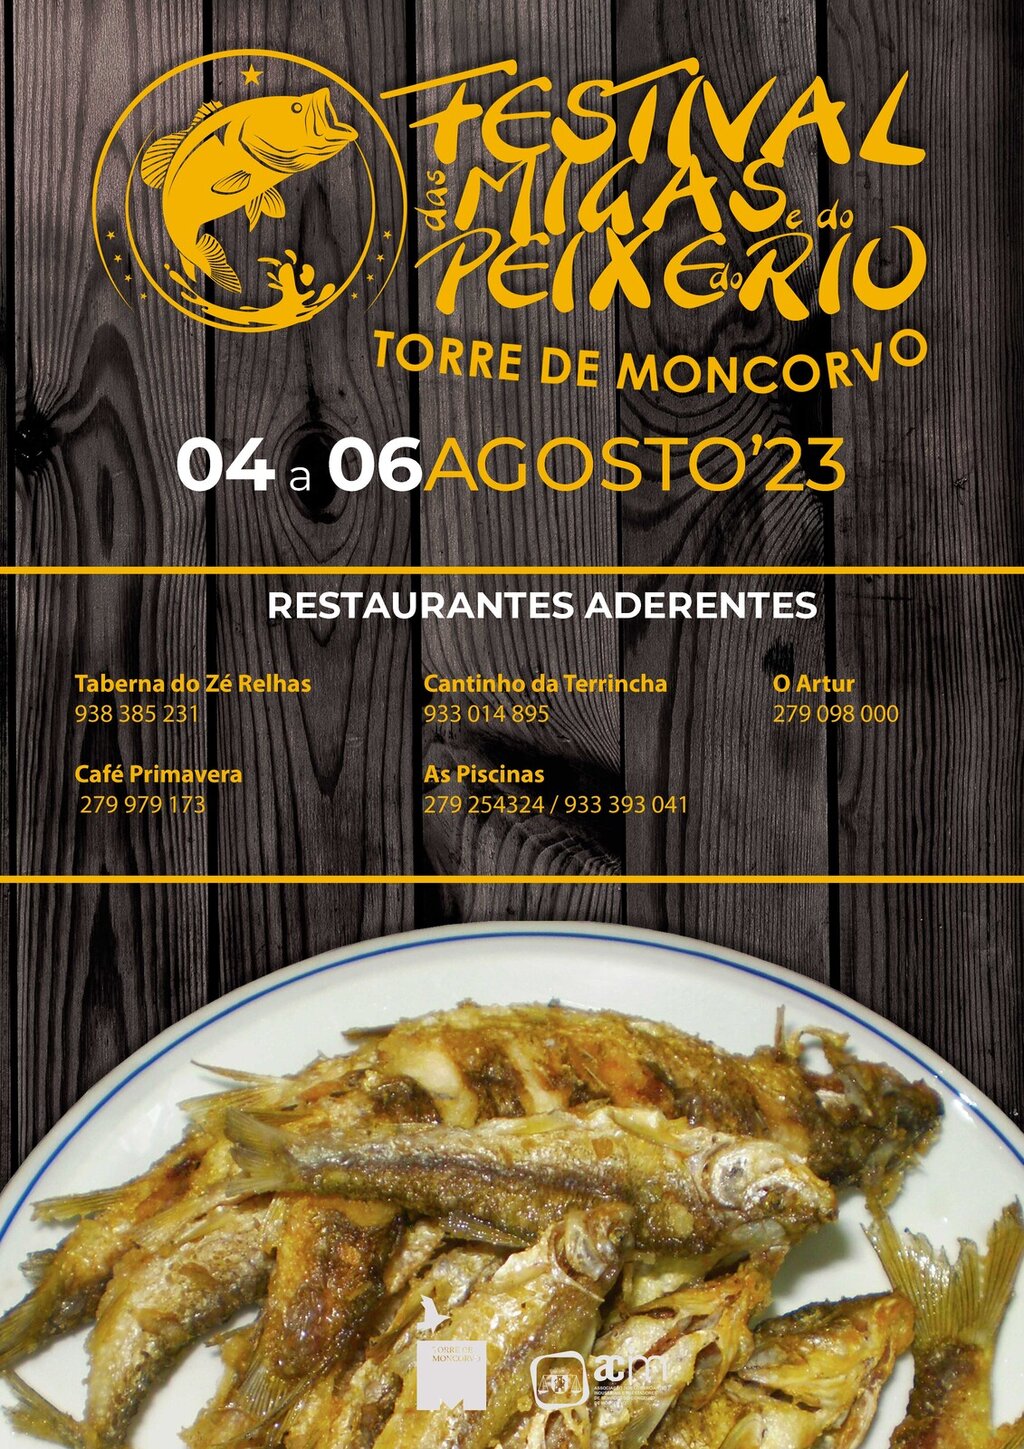 Festival das Migas e do Peixe do Rio regressa a Torre de Moncorvo em Agosto